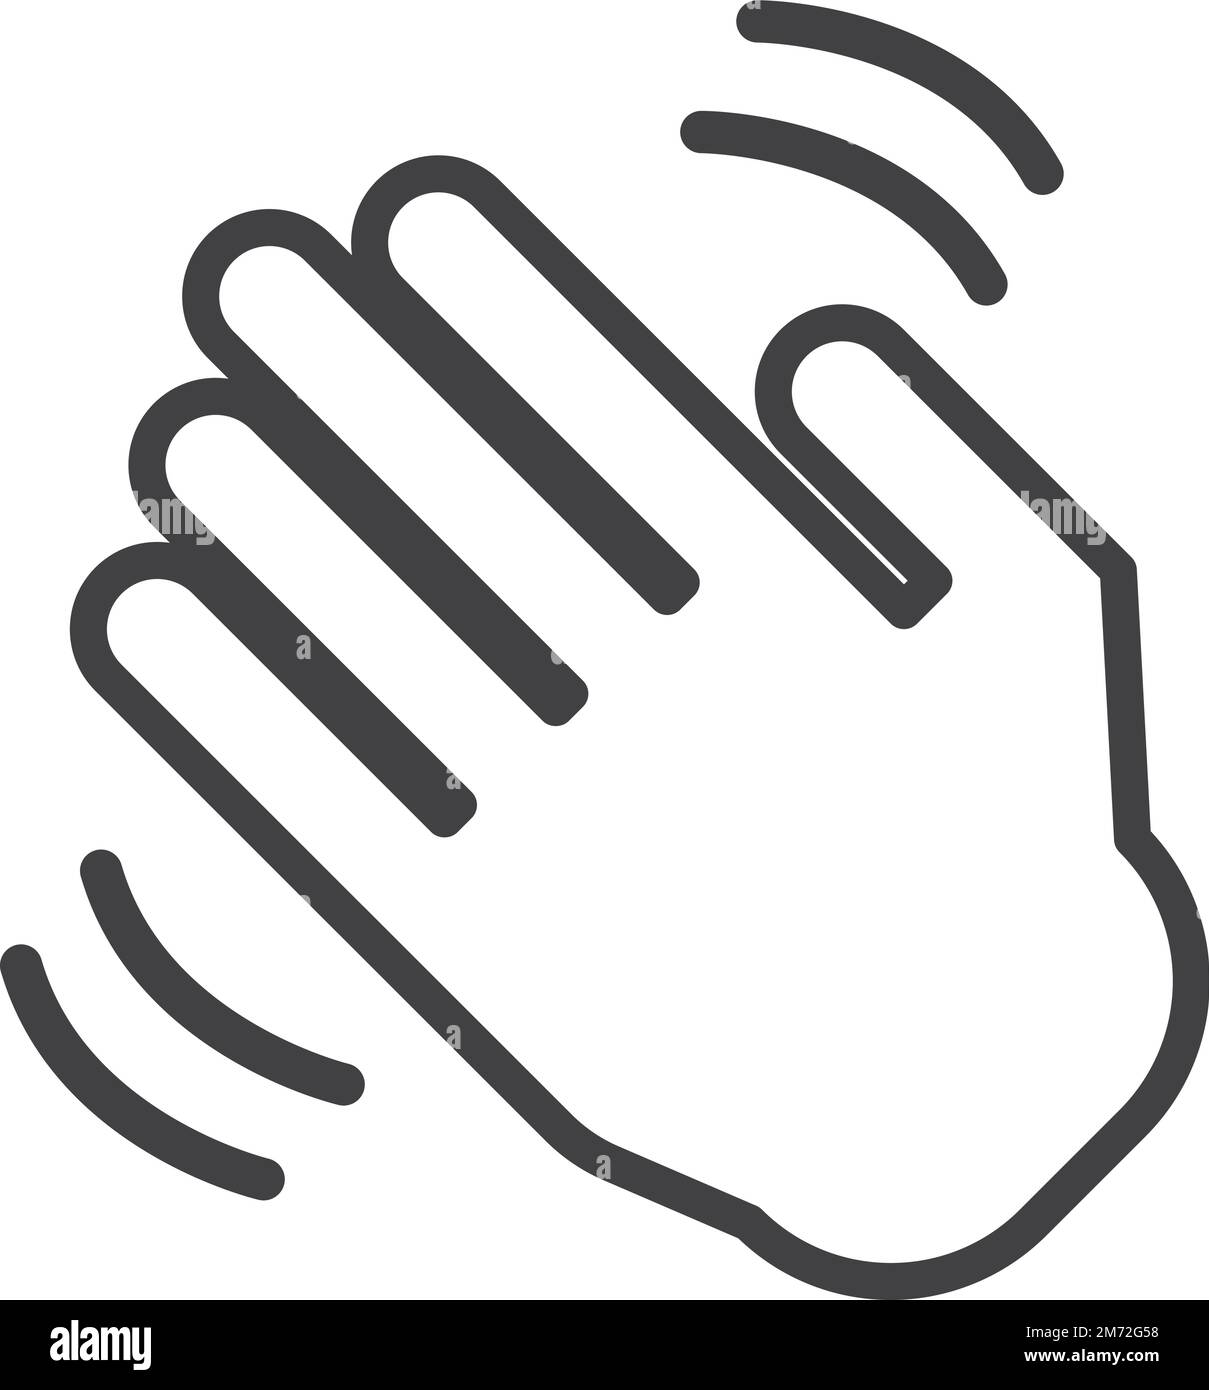 illustration de la main onduleuse dans un style minimal isolé sur l'arrière-plan Illustration de Vecteur